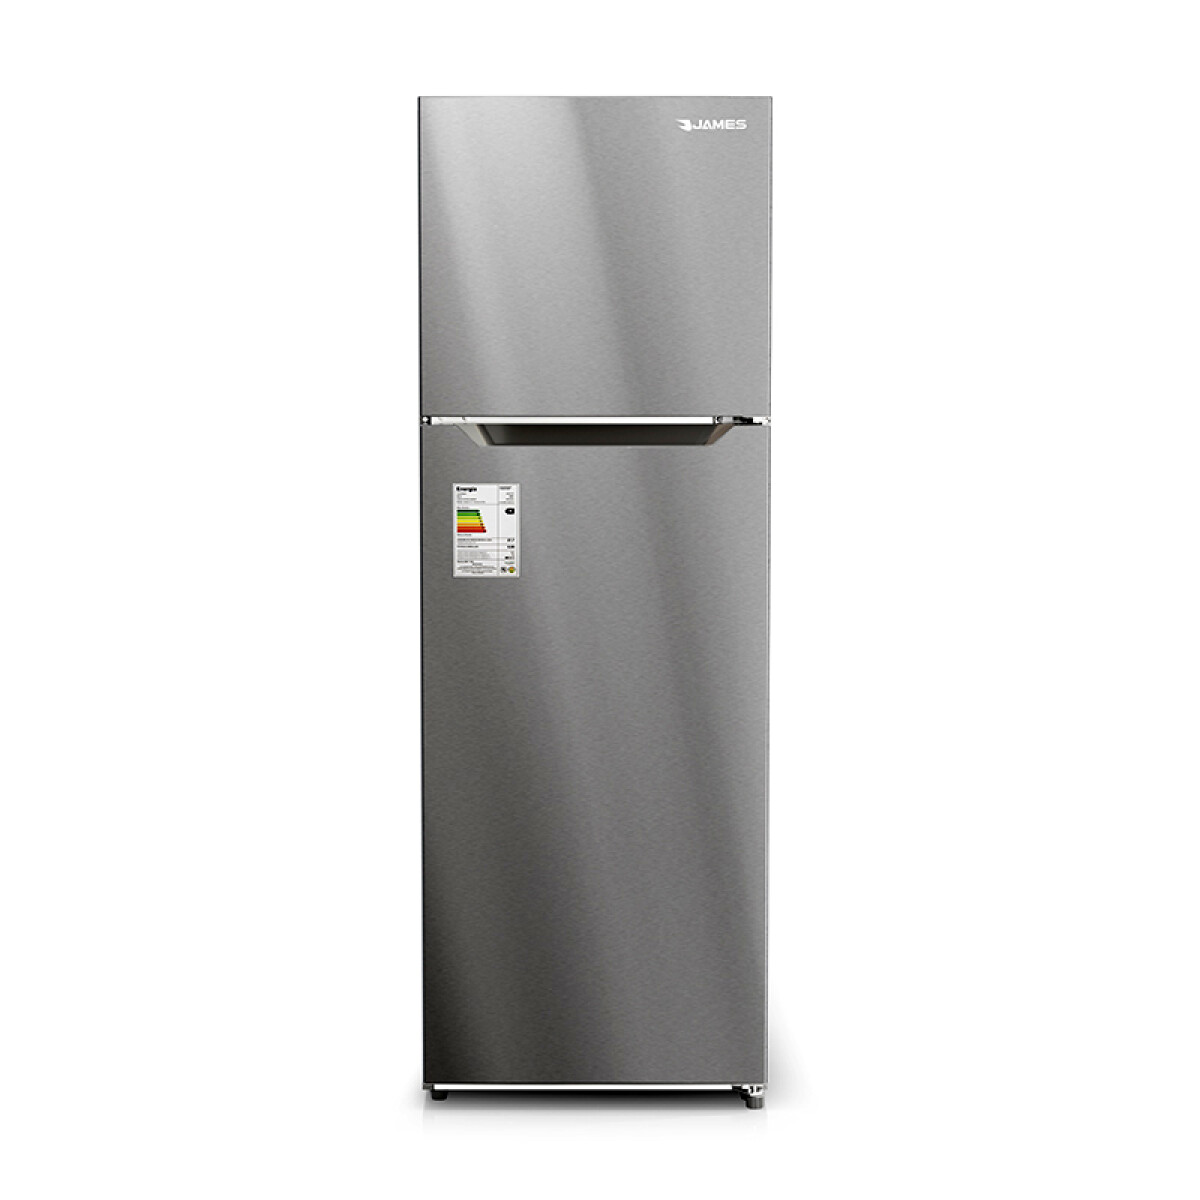 Refrigerador James RJ 401I Inox 